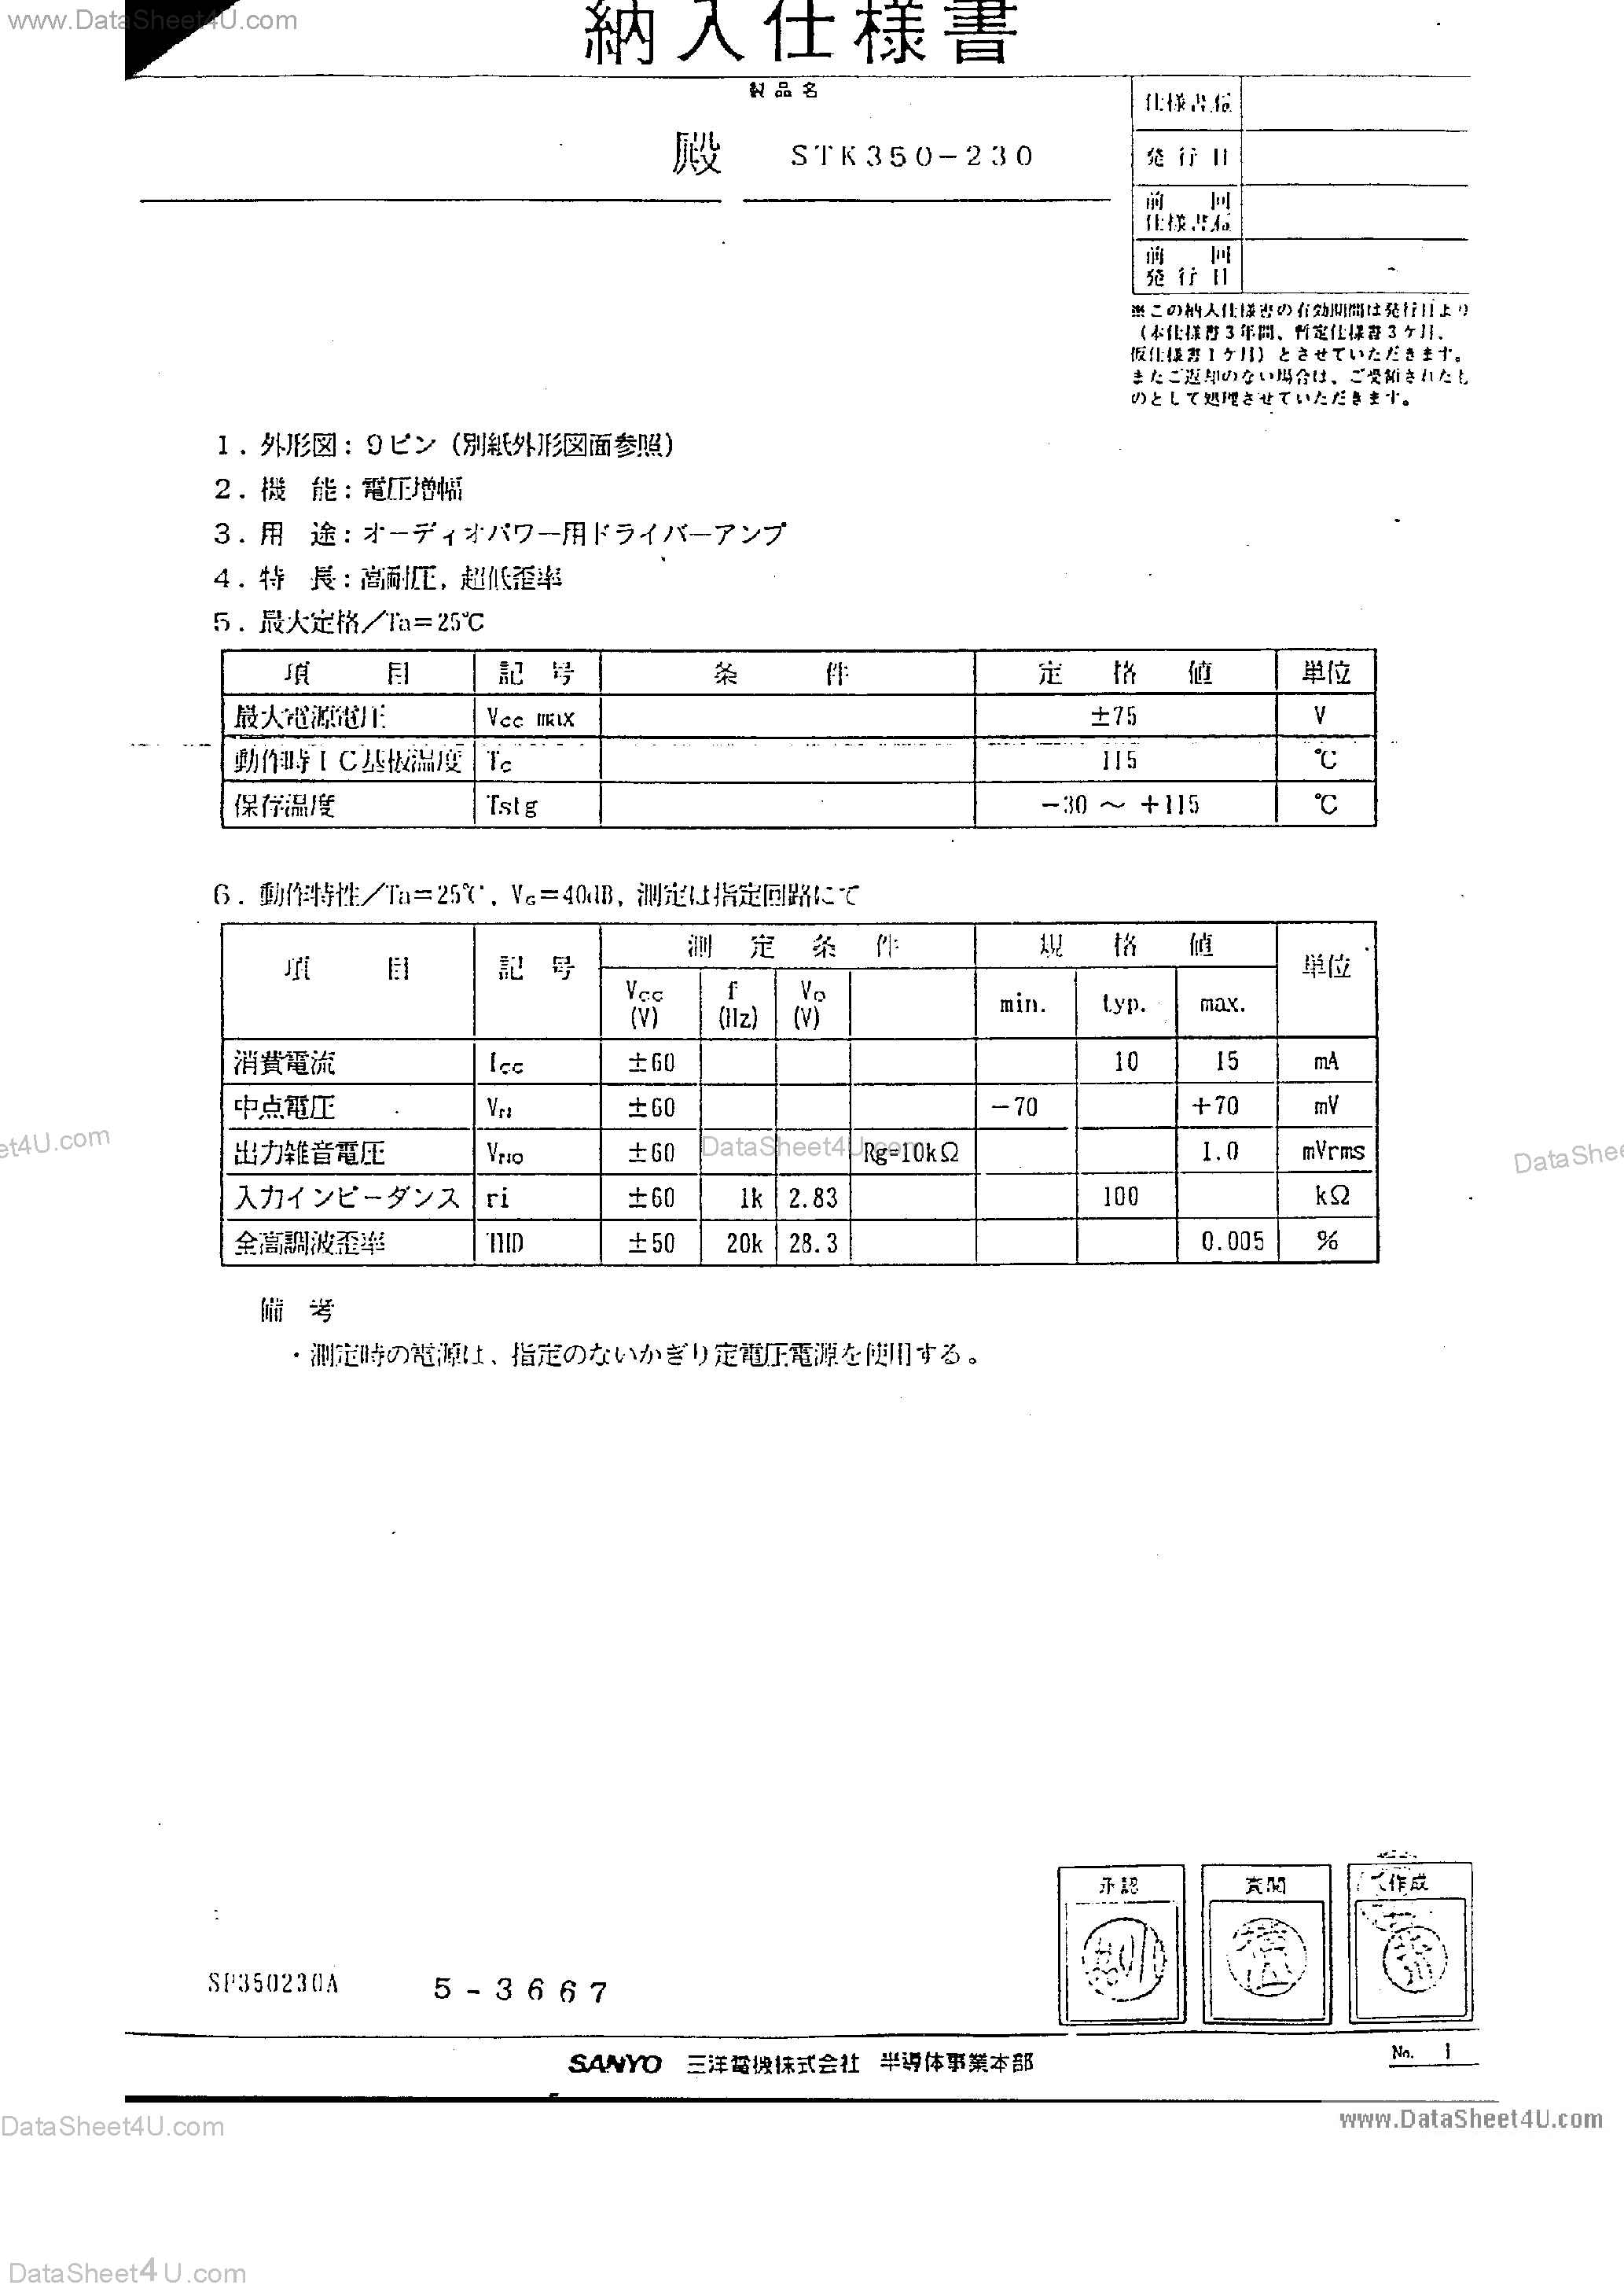 Datasheet STK350-230 - STK350-230 page 2